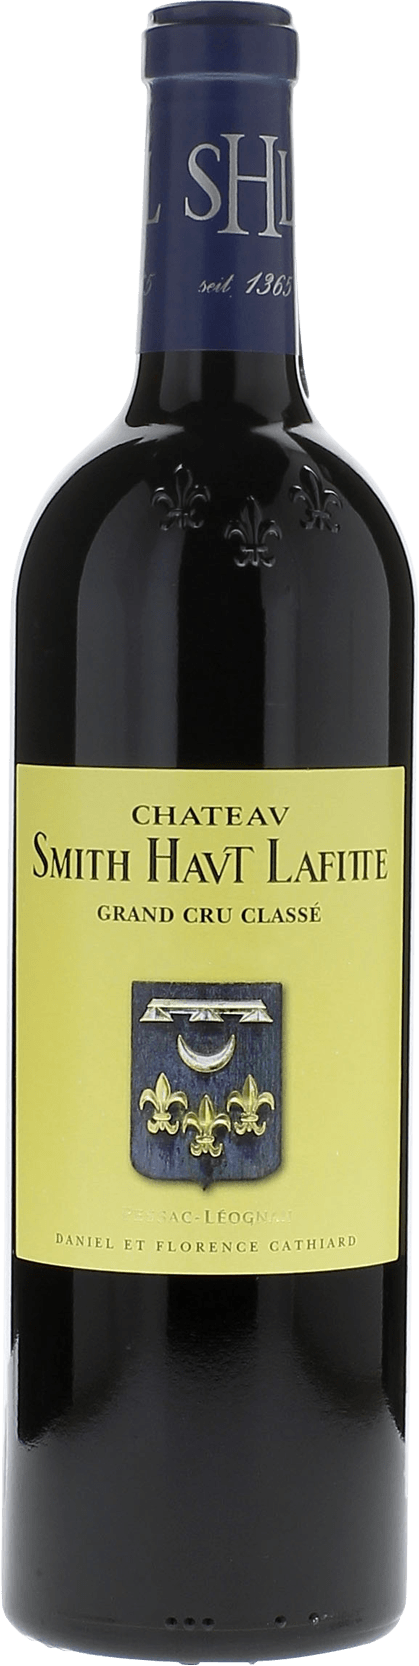 Smith haut lafitte 1990 Grand Cru Class Graves, Bordeaux rouge